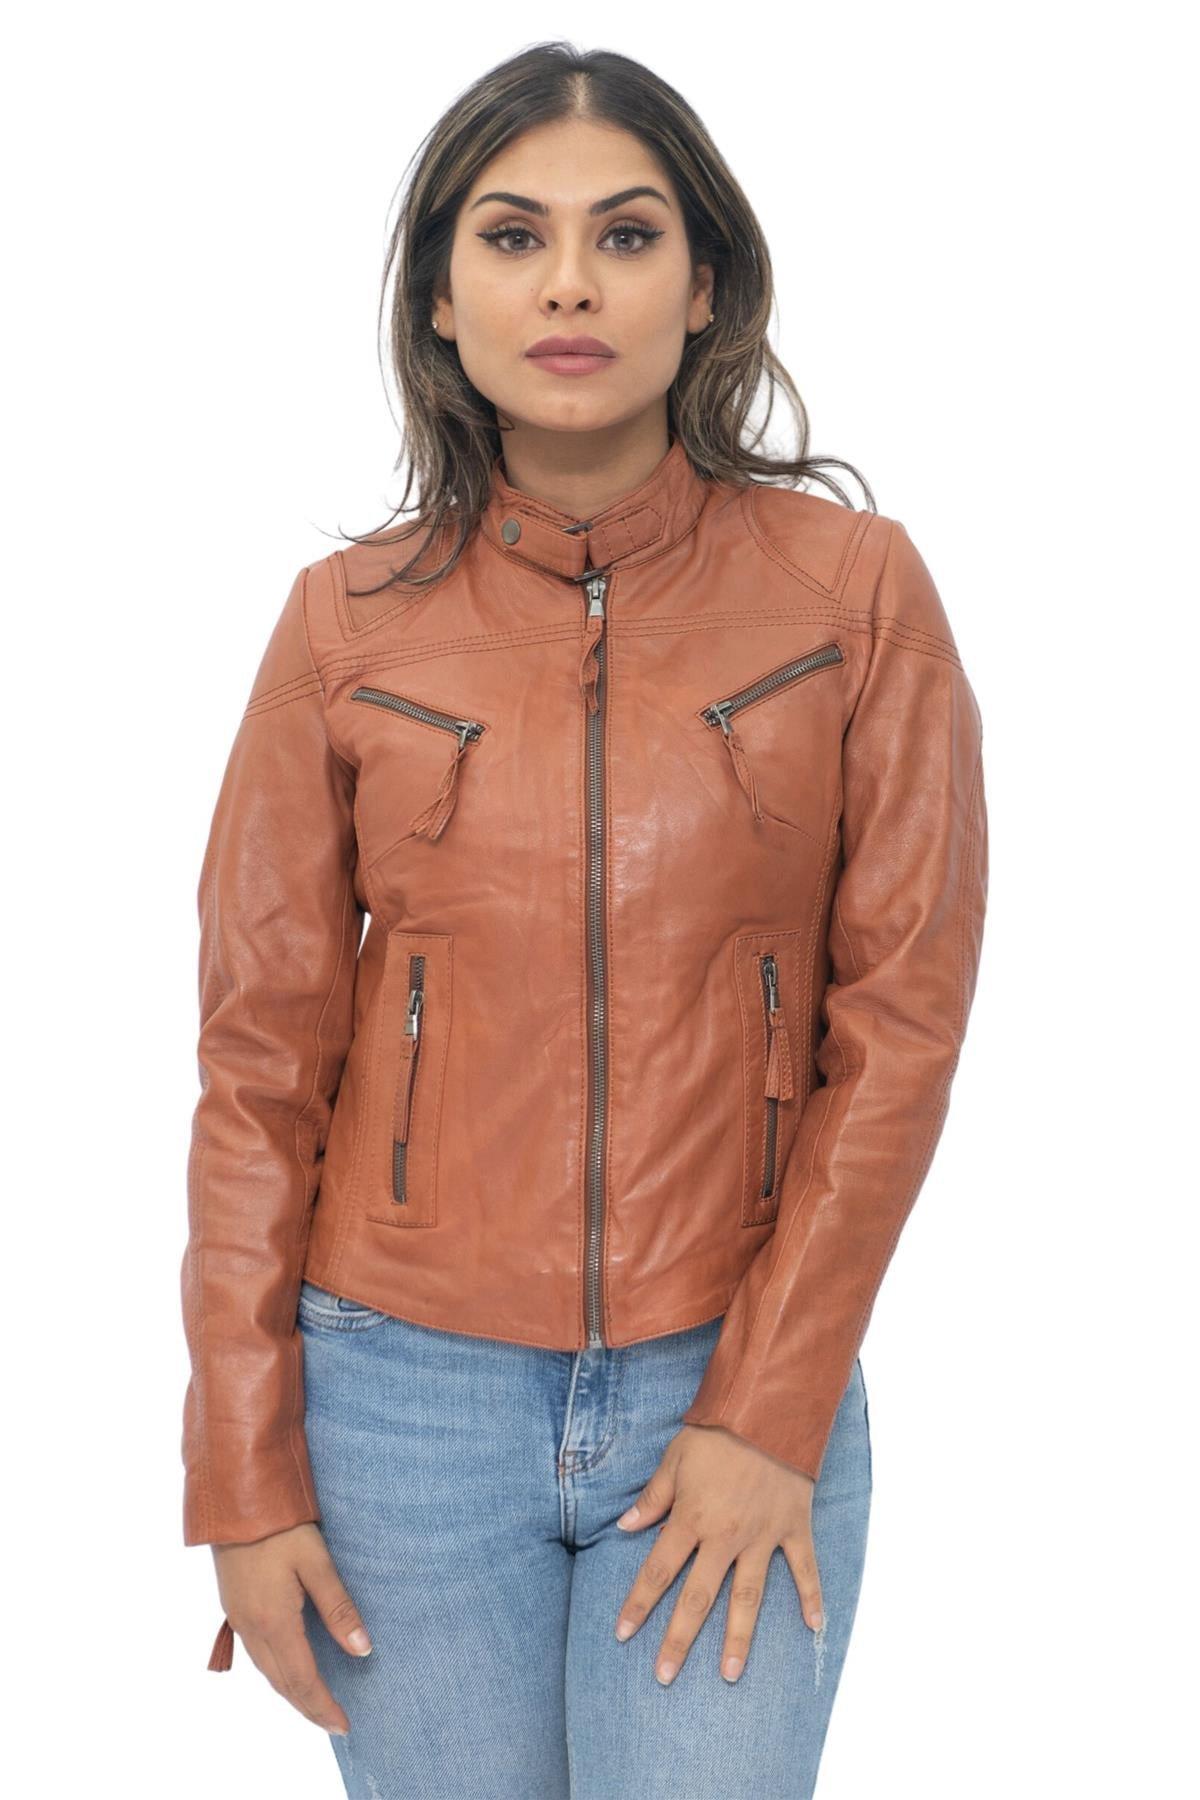 Повседневная кожаная байкерская куртка узкого кроя-Tulsa Infinity Leather, коричневый